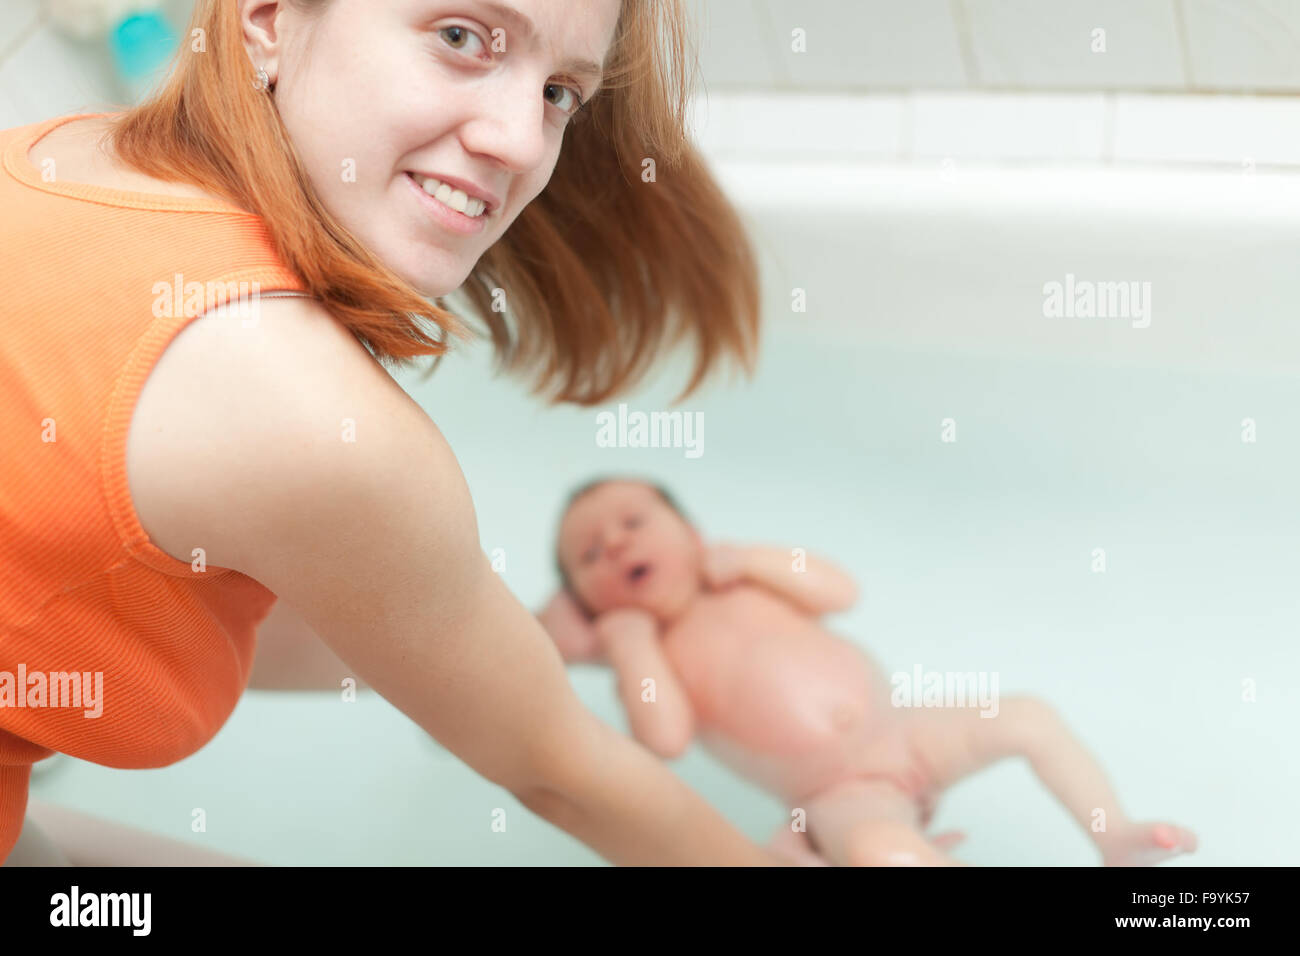 Мама в ванной рассказ. Мать купает дочь. Мама купает дочку фото. Мама купает дочку в ванной. Купаю дочь.